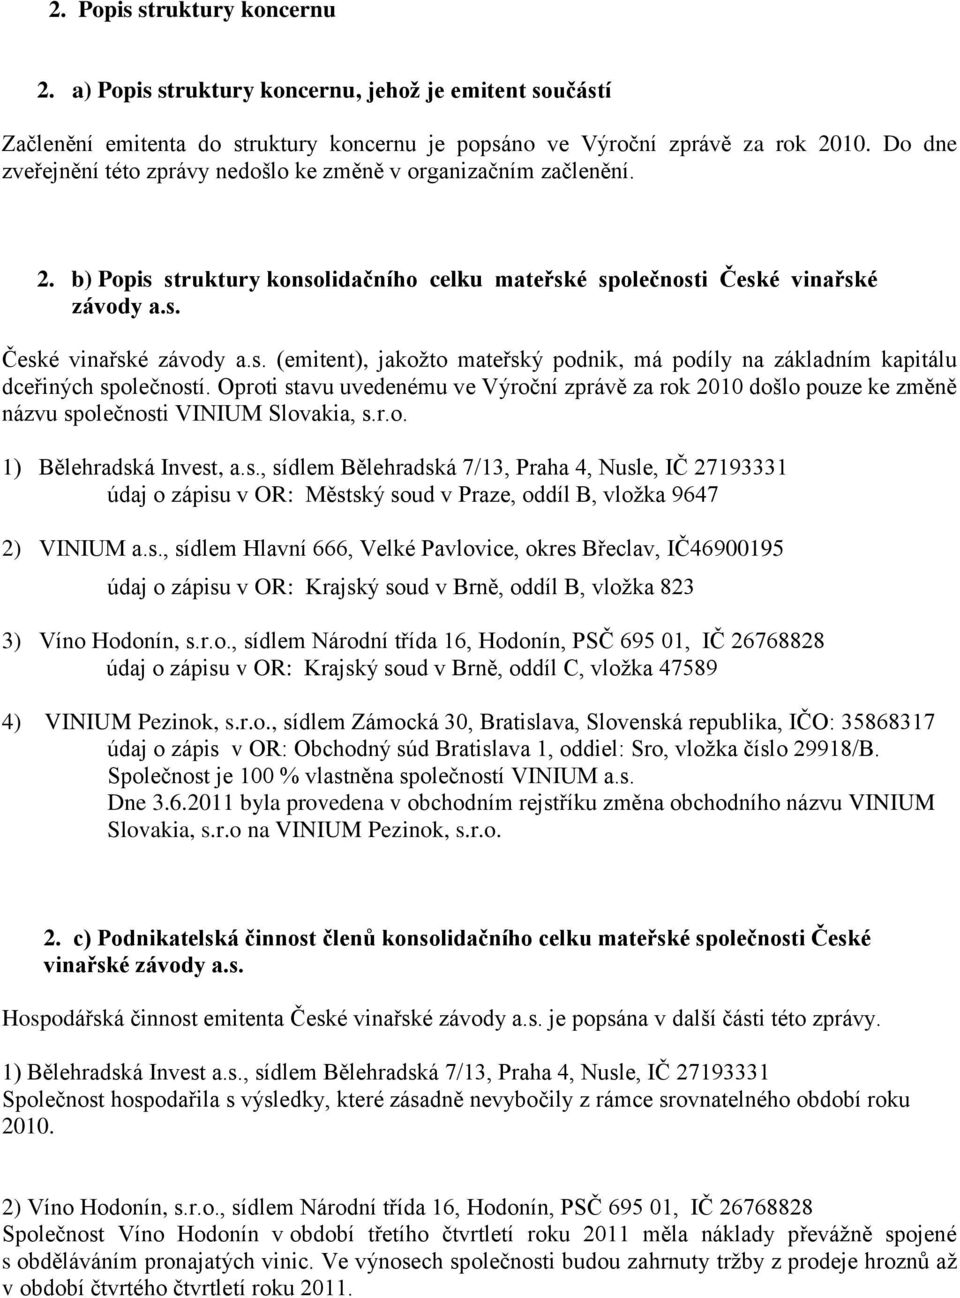 Oproti stavu uvedenému ve Výroční zprávě za rok 2010 došlo pouze ke změně názvu společnosti VINIUM Slovakia, s.r.o. 1) Bělehradská Invest, a.s., sídlem Bělehradská 7/13, Praha 4, Nusle, IČ 27193331 údaj o zápisu v OR: Městský soud v Praze, oddíl B, vložka 9647 2) VINIUM a.